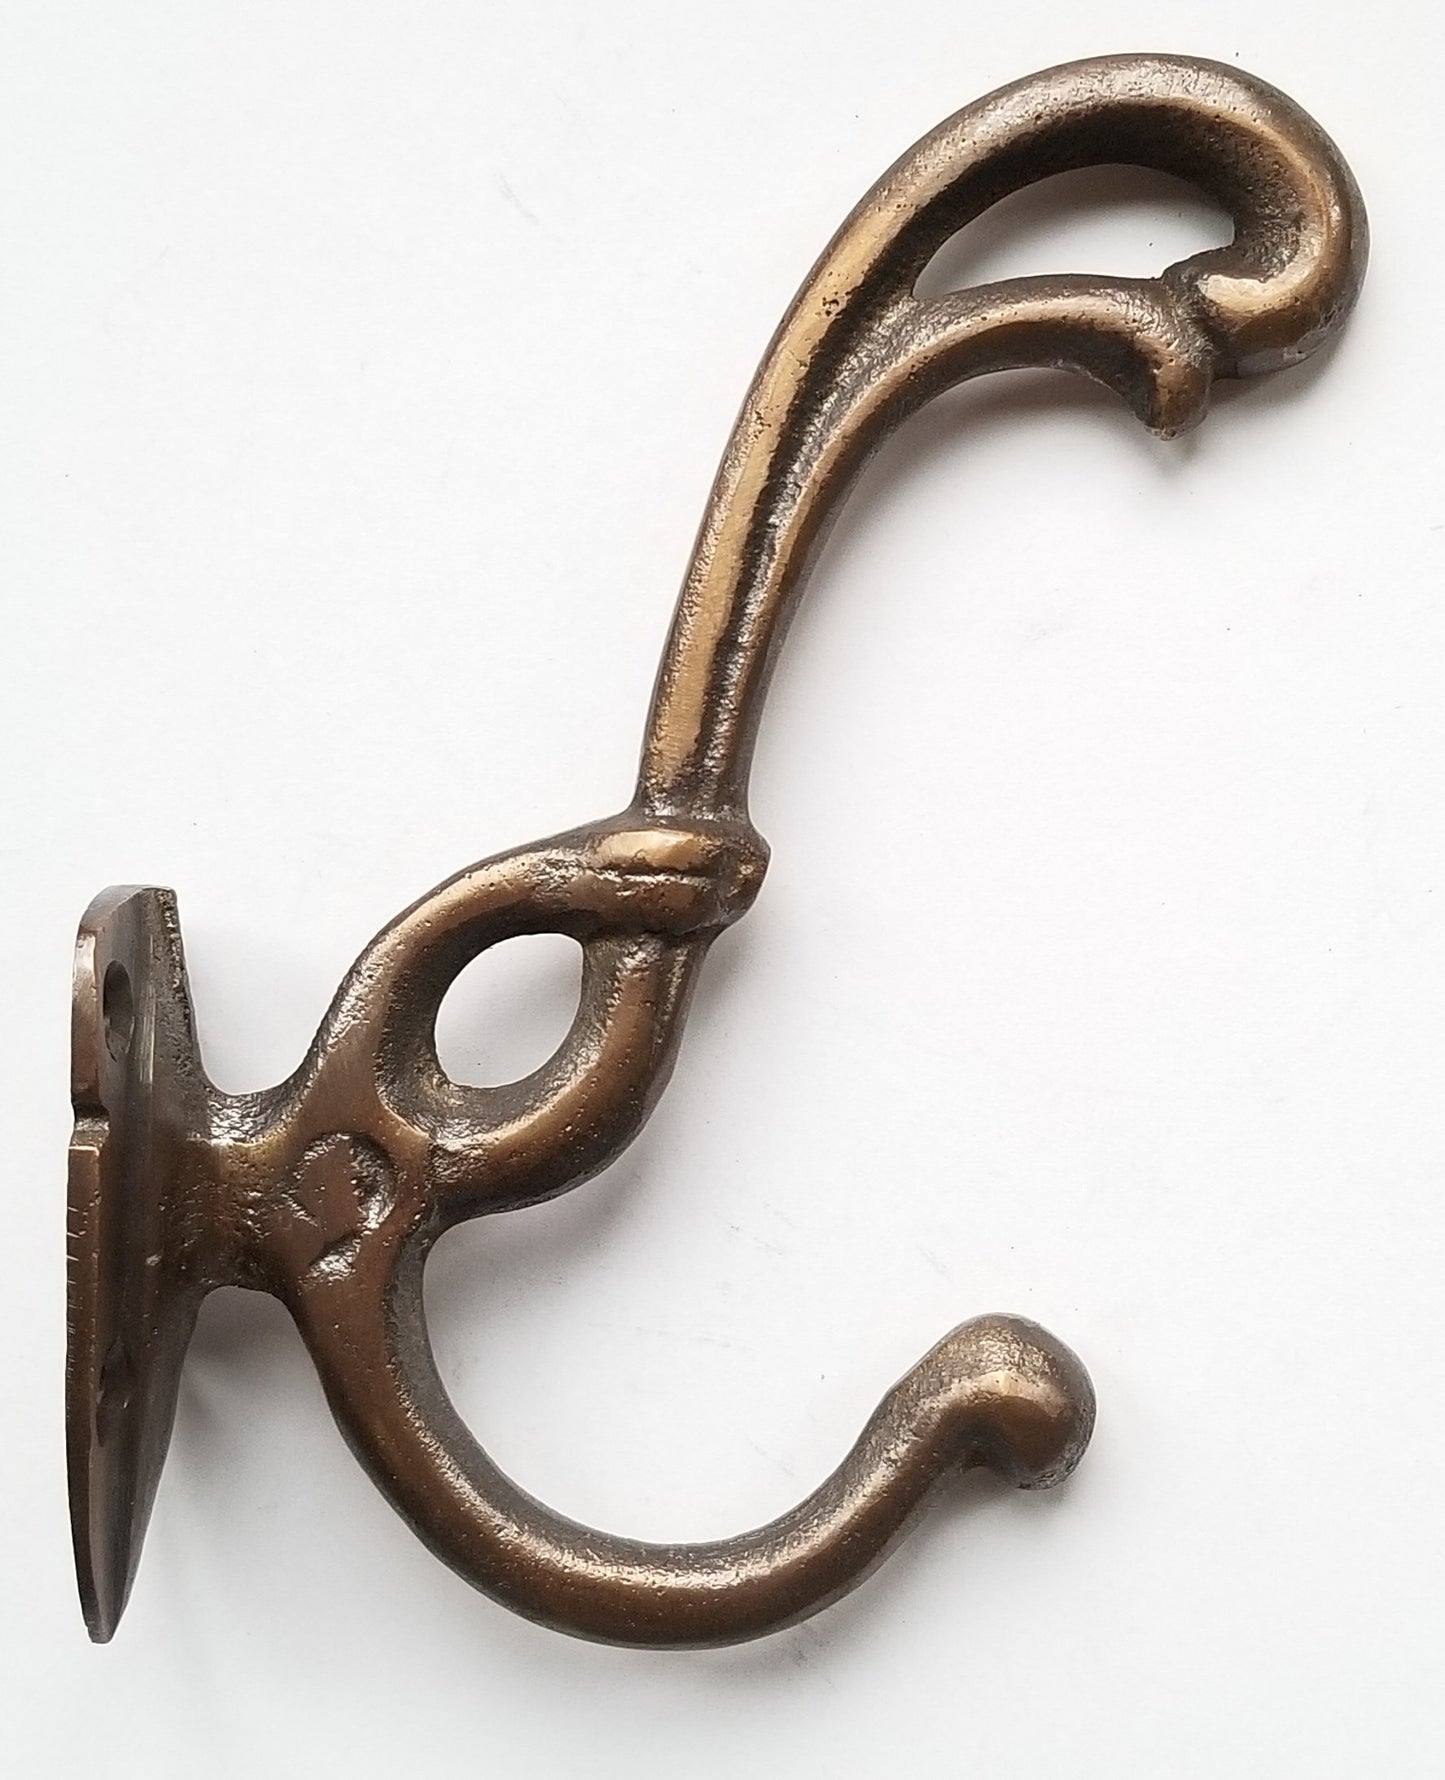 2 Rare Antique Style Brass Art Nouveau Coat Hooks Ornate double hooks #C14